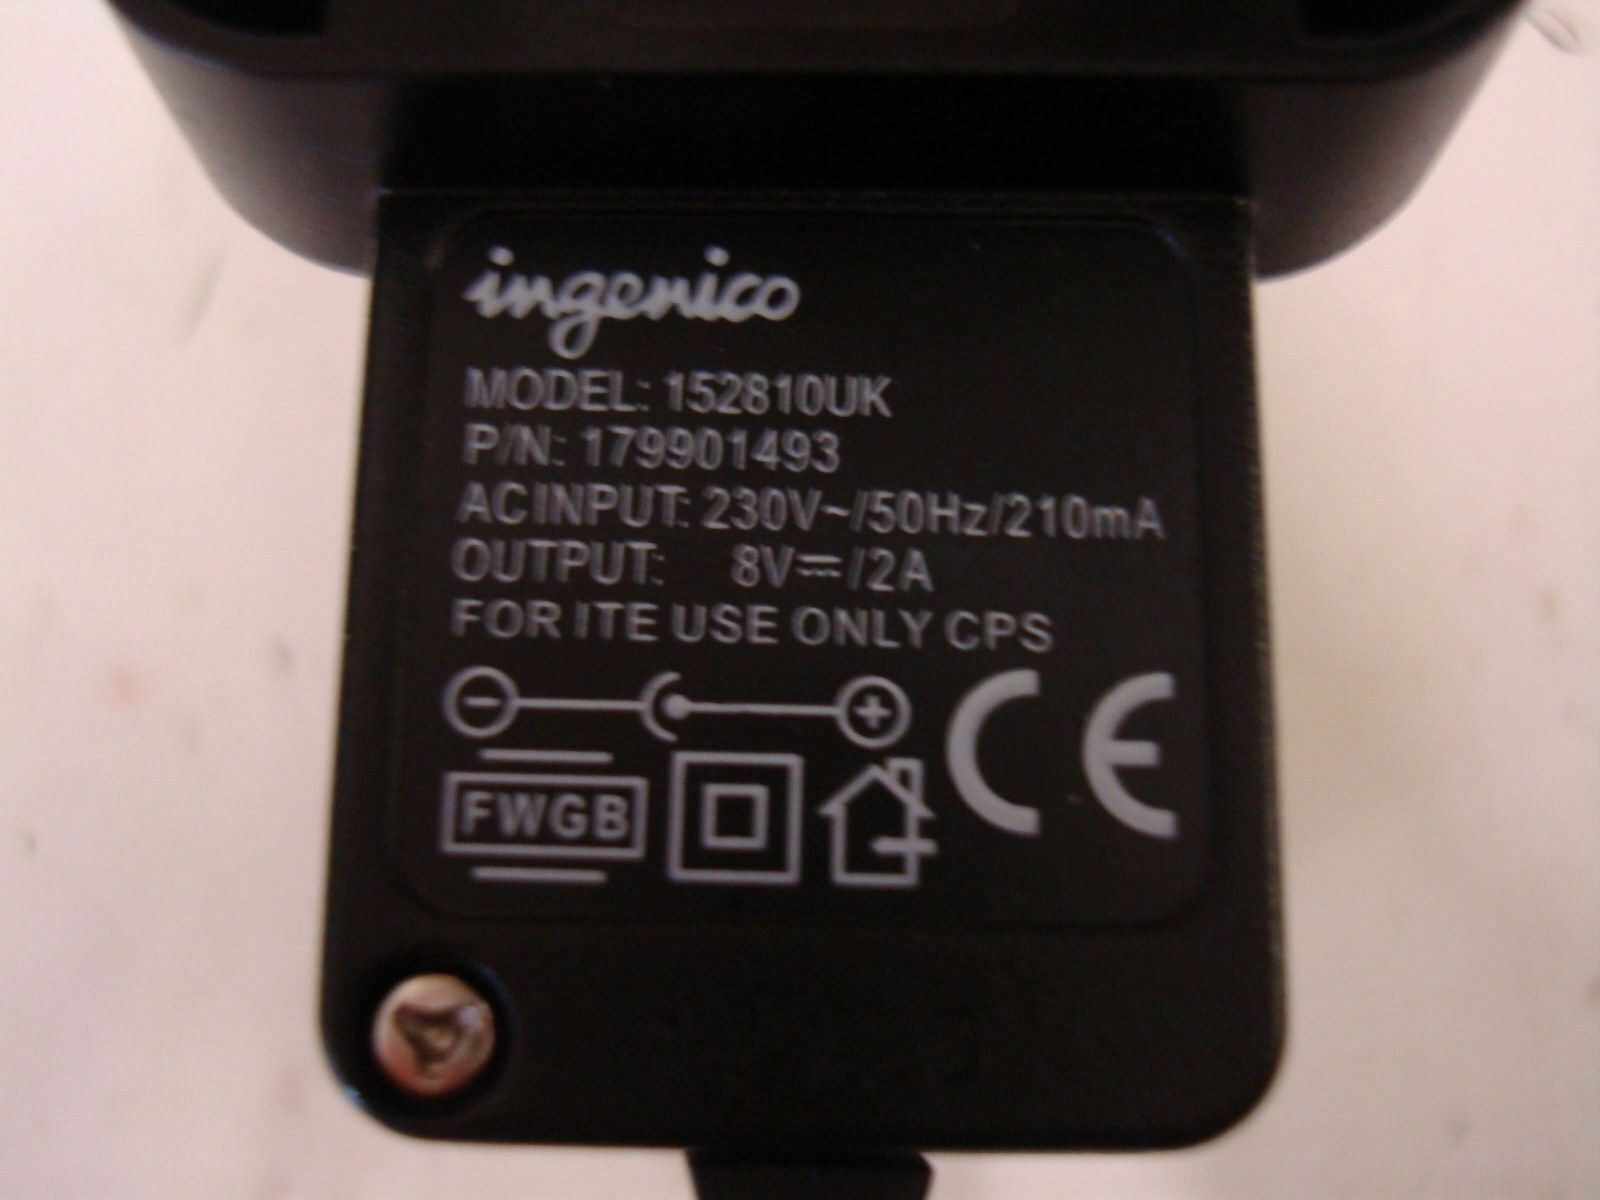 New 8V 2A INGENICO MODEL 152810UK ac adapter power charger UK PLUG